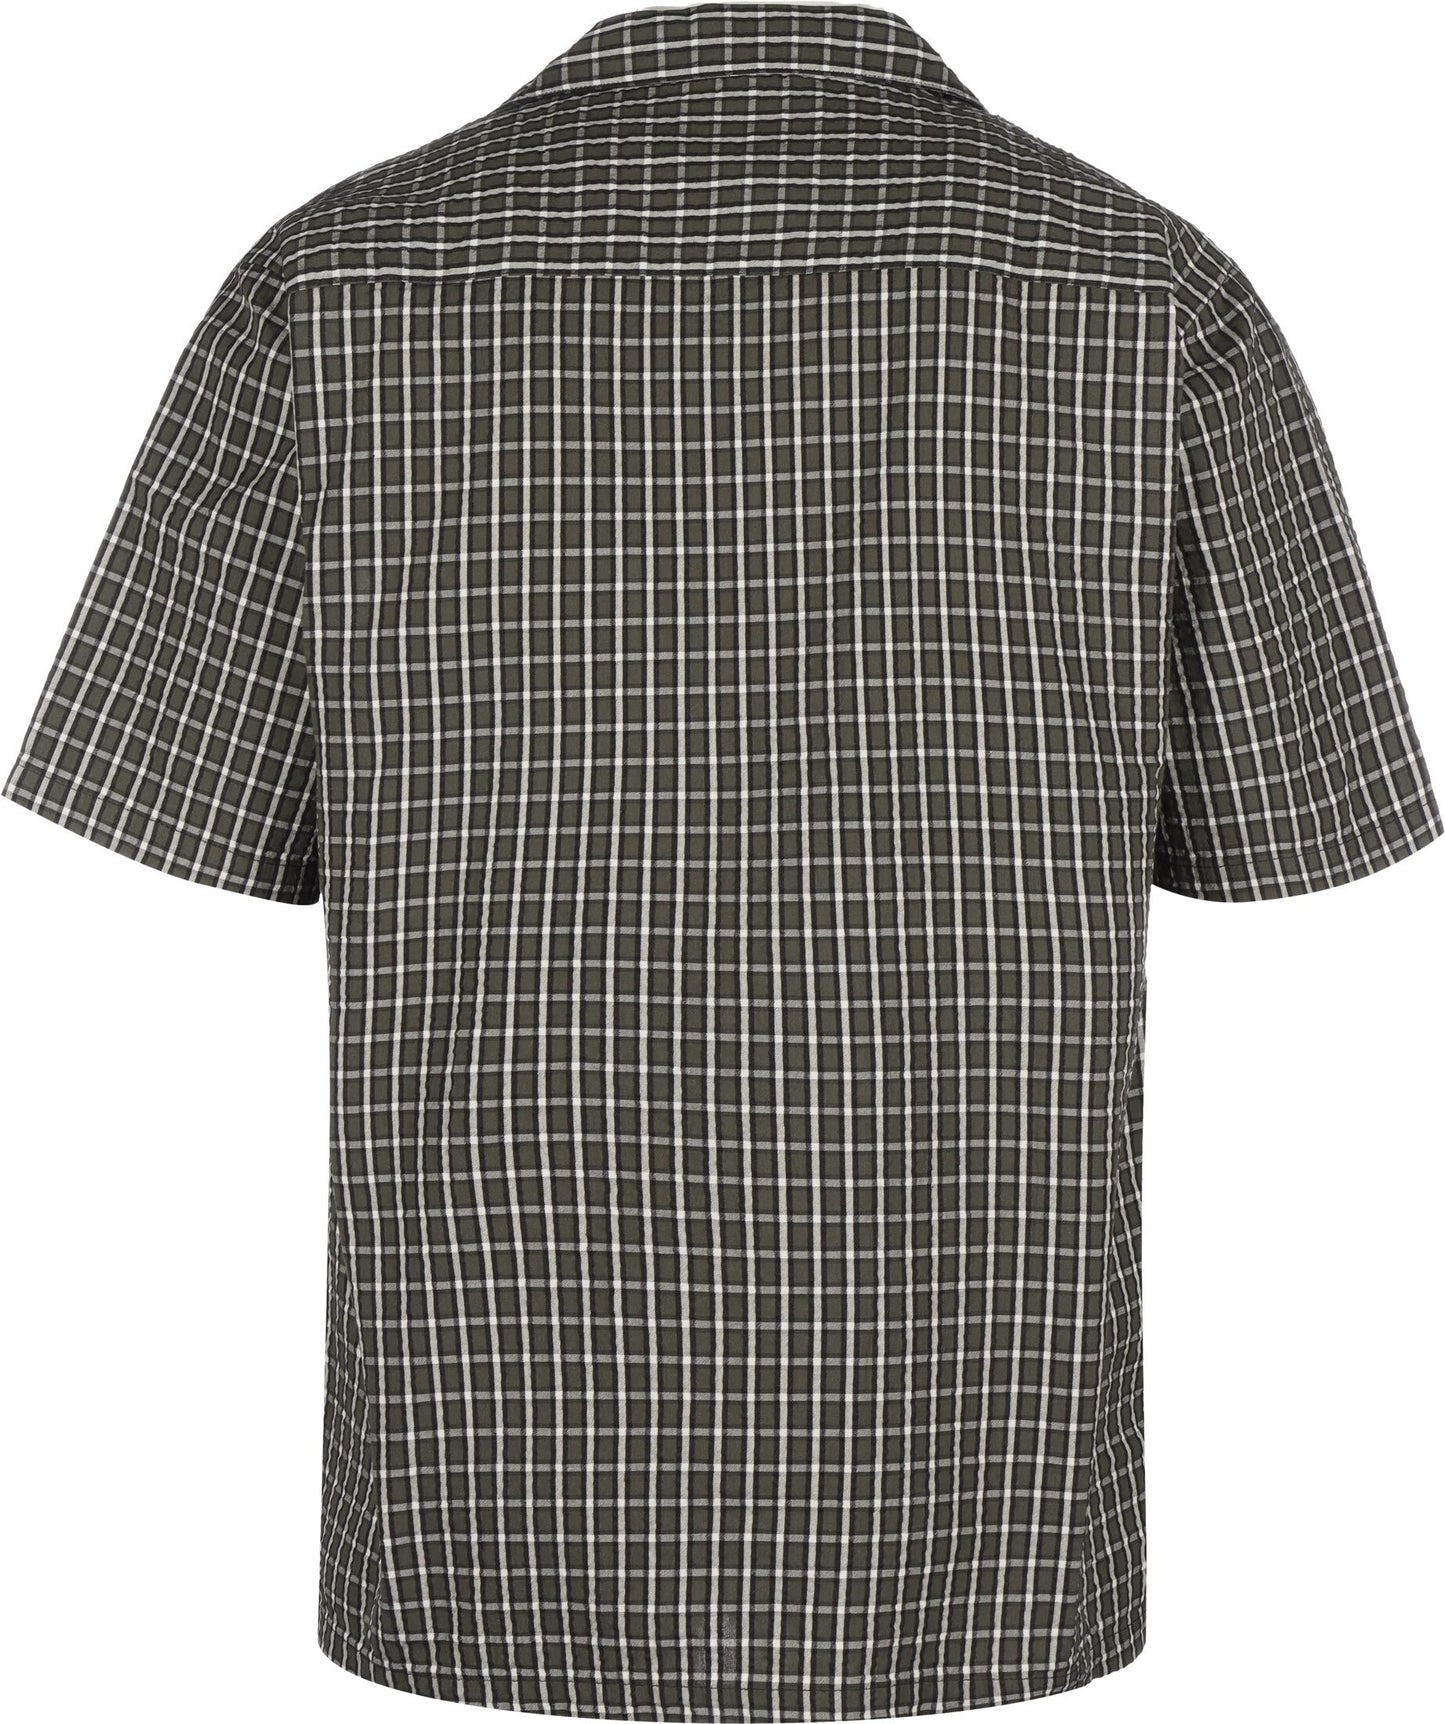 Carhartt WIP Dryden Shirt Dryden Check Madison Cypress